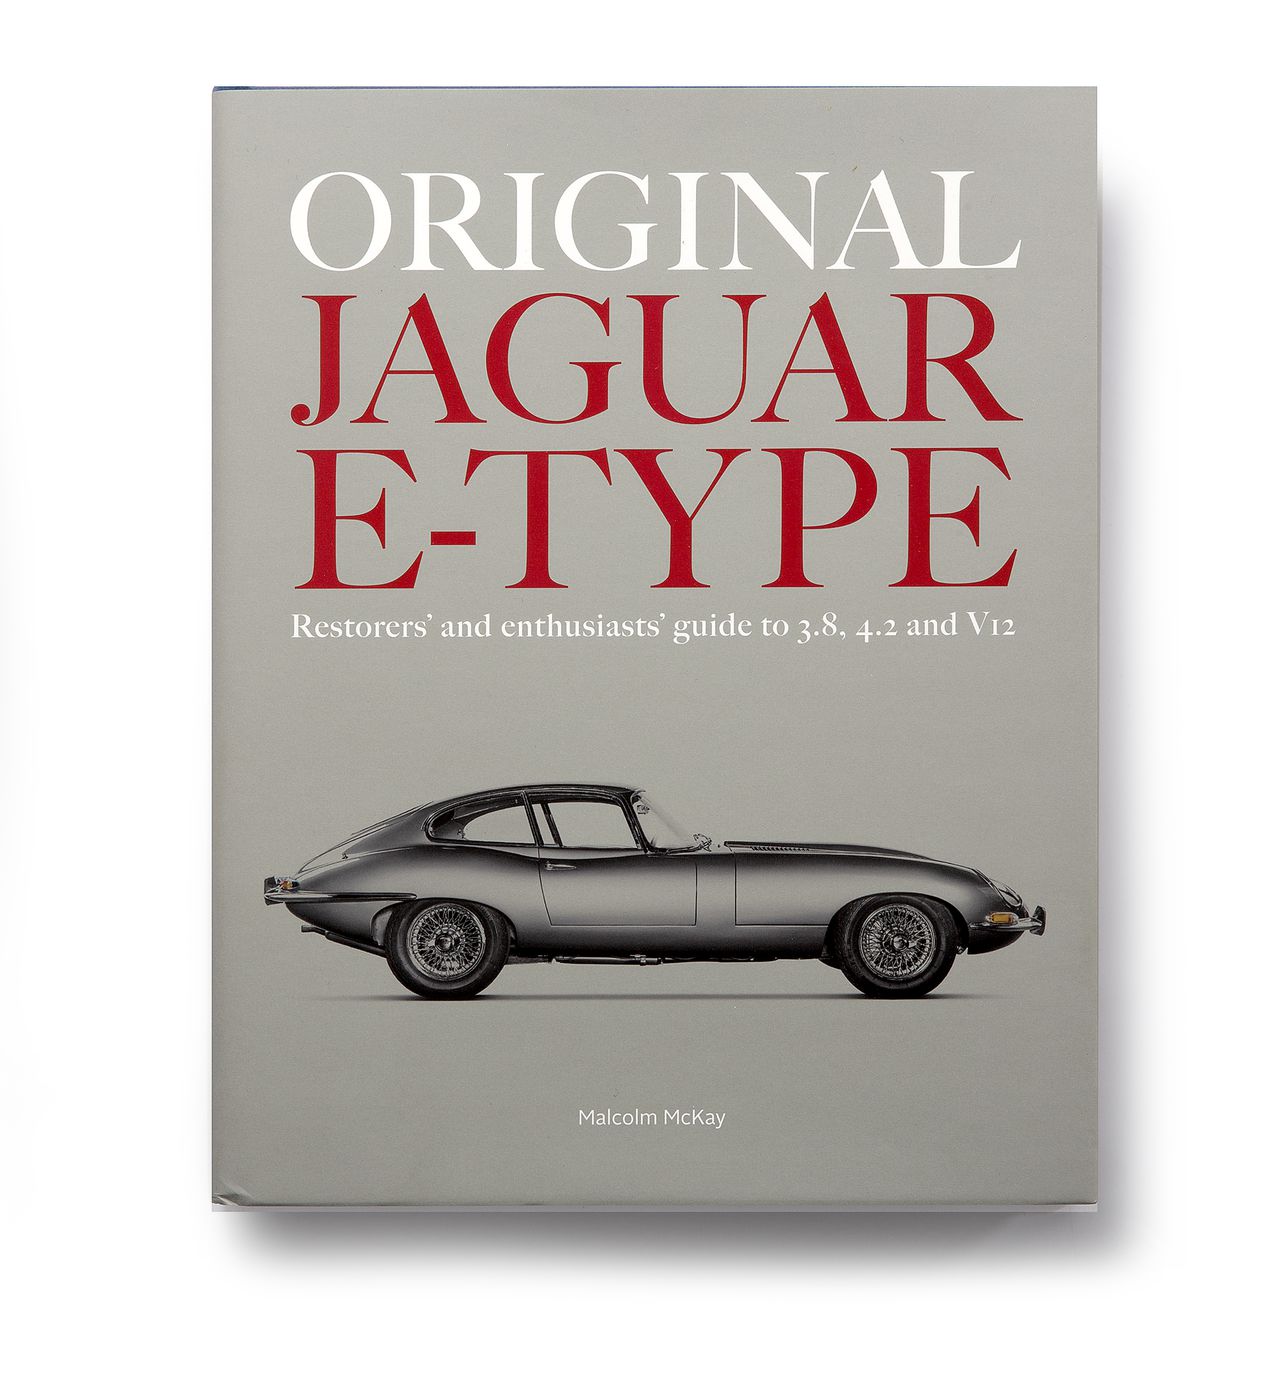 Jaguar E-Type
Jaguar E-Type
Jaguar Type 'E'
Jaguar E-Type
Jaguar